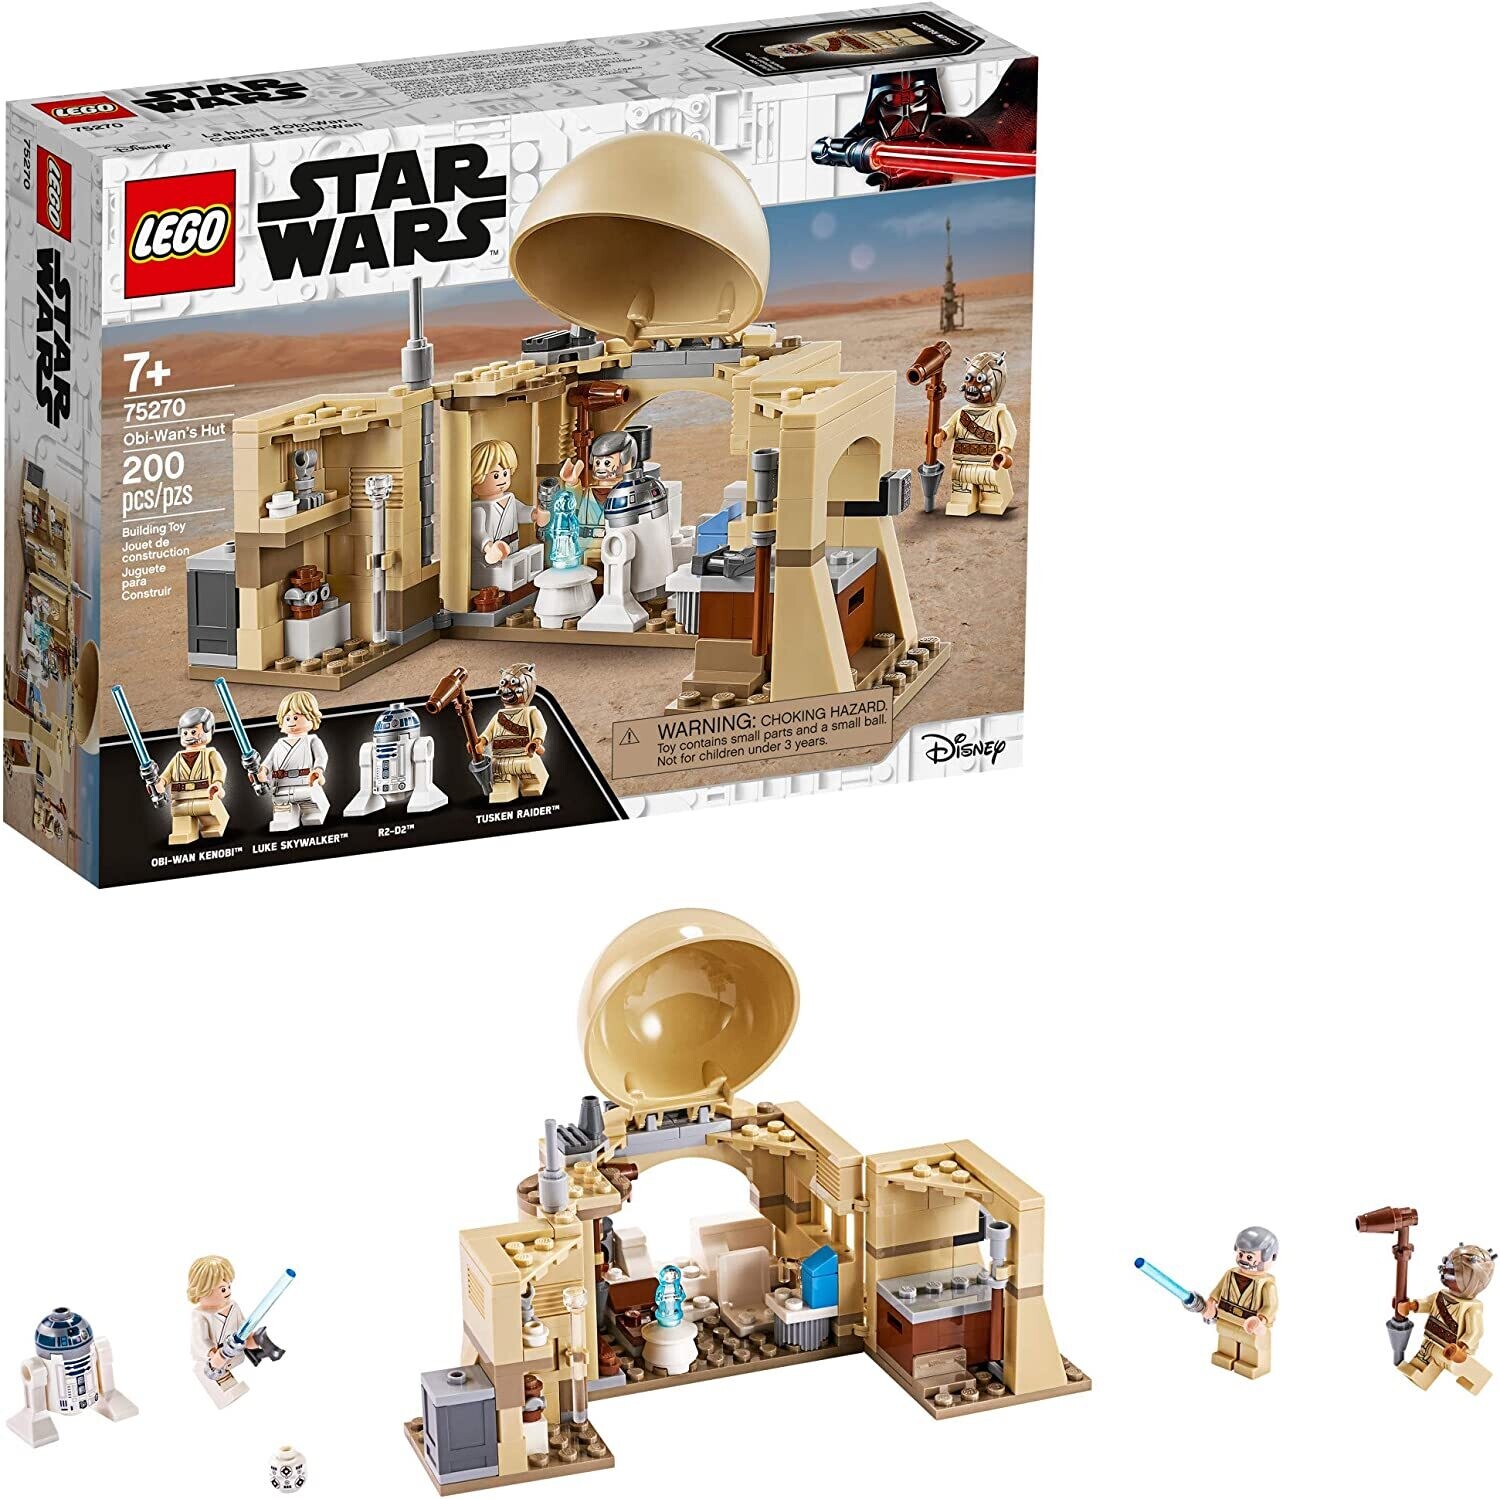 Lego 75270 Star Wars Obi-Wan's Hut